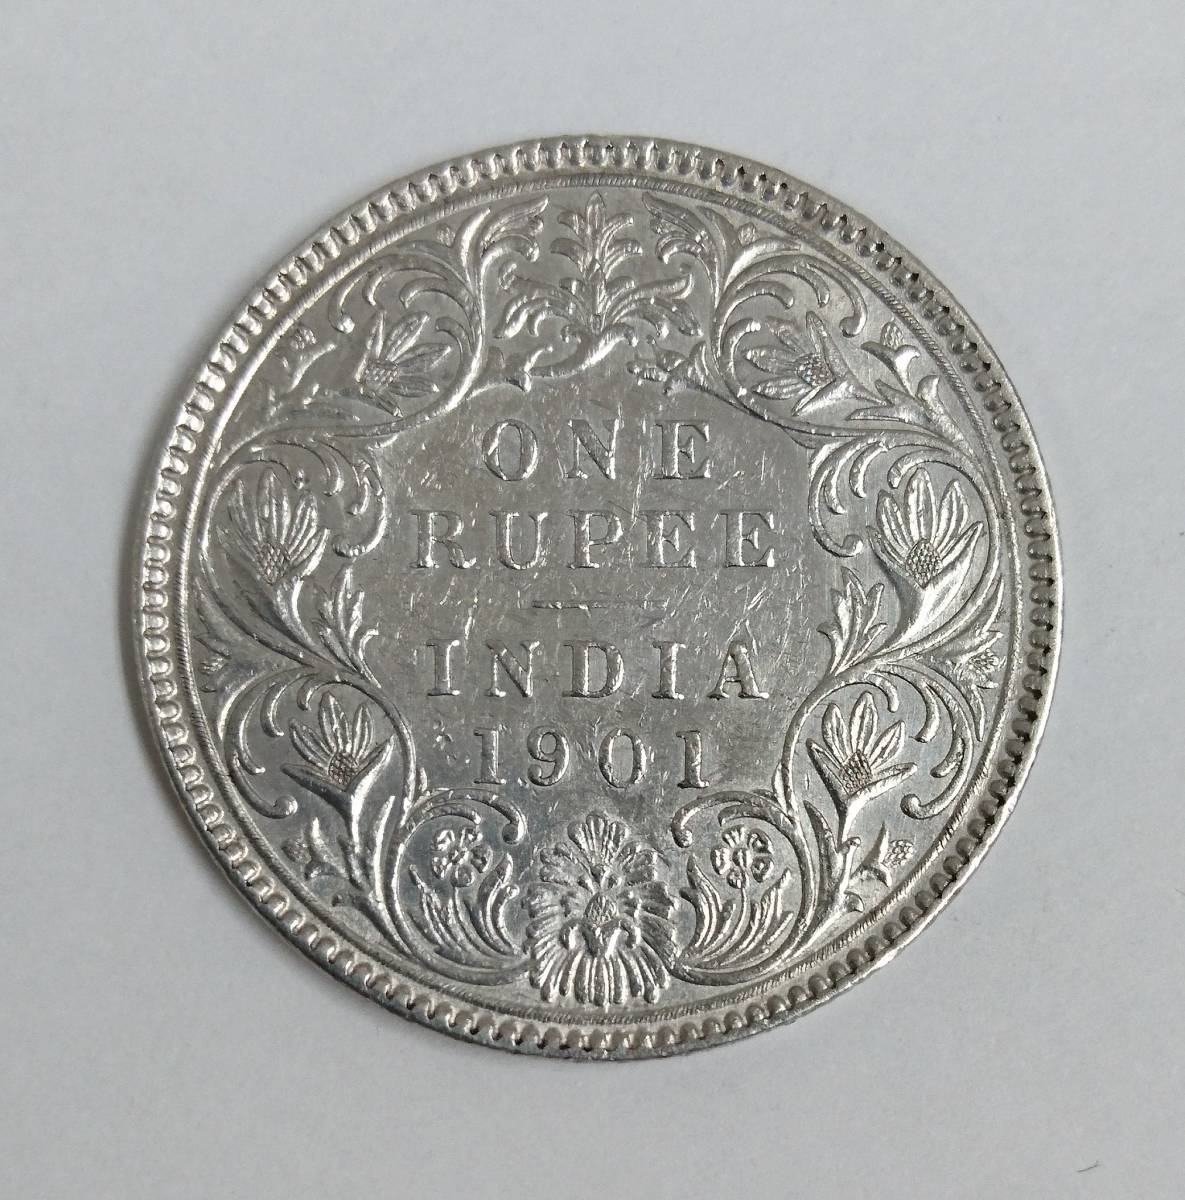  原文:◇ 英領 インド銀貨 1901 ONE RUPEE INDIA 硬貨 ◇